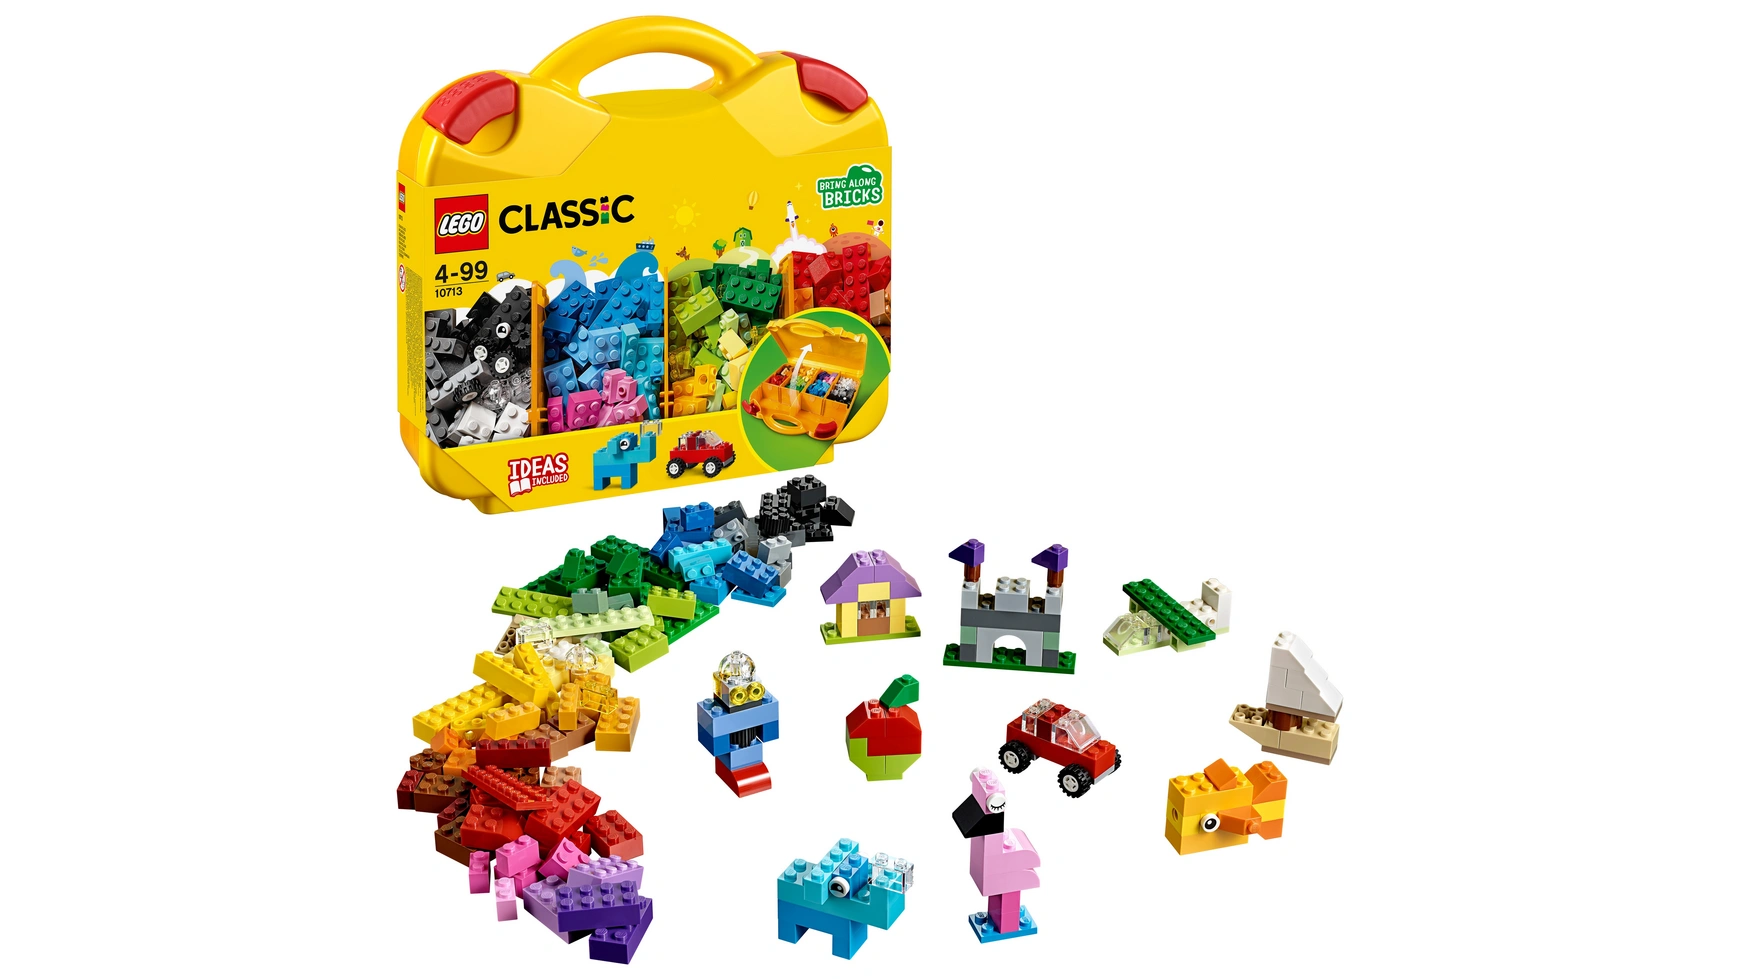 Lego Classic Набор строительных блоков Lego сортировка цветов gan monster go twist волшебный пазл змея антистресс монстерго милое создание искусства полный набор из 24 строительных блоков в сборе